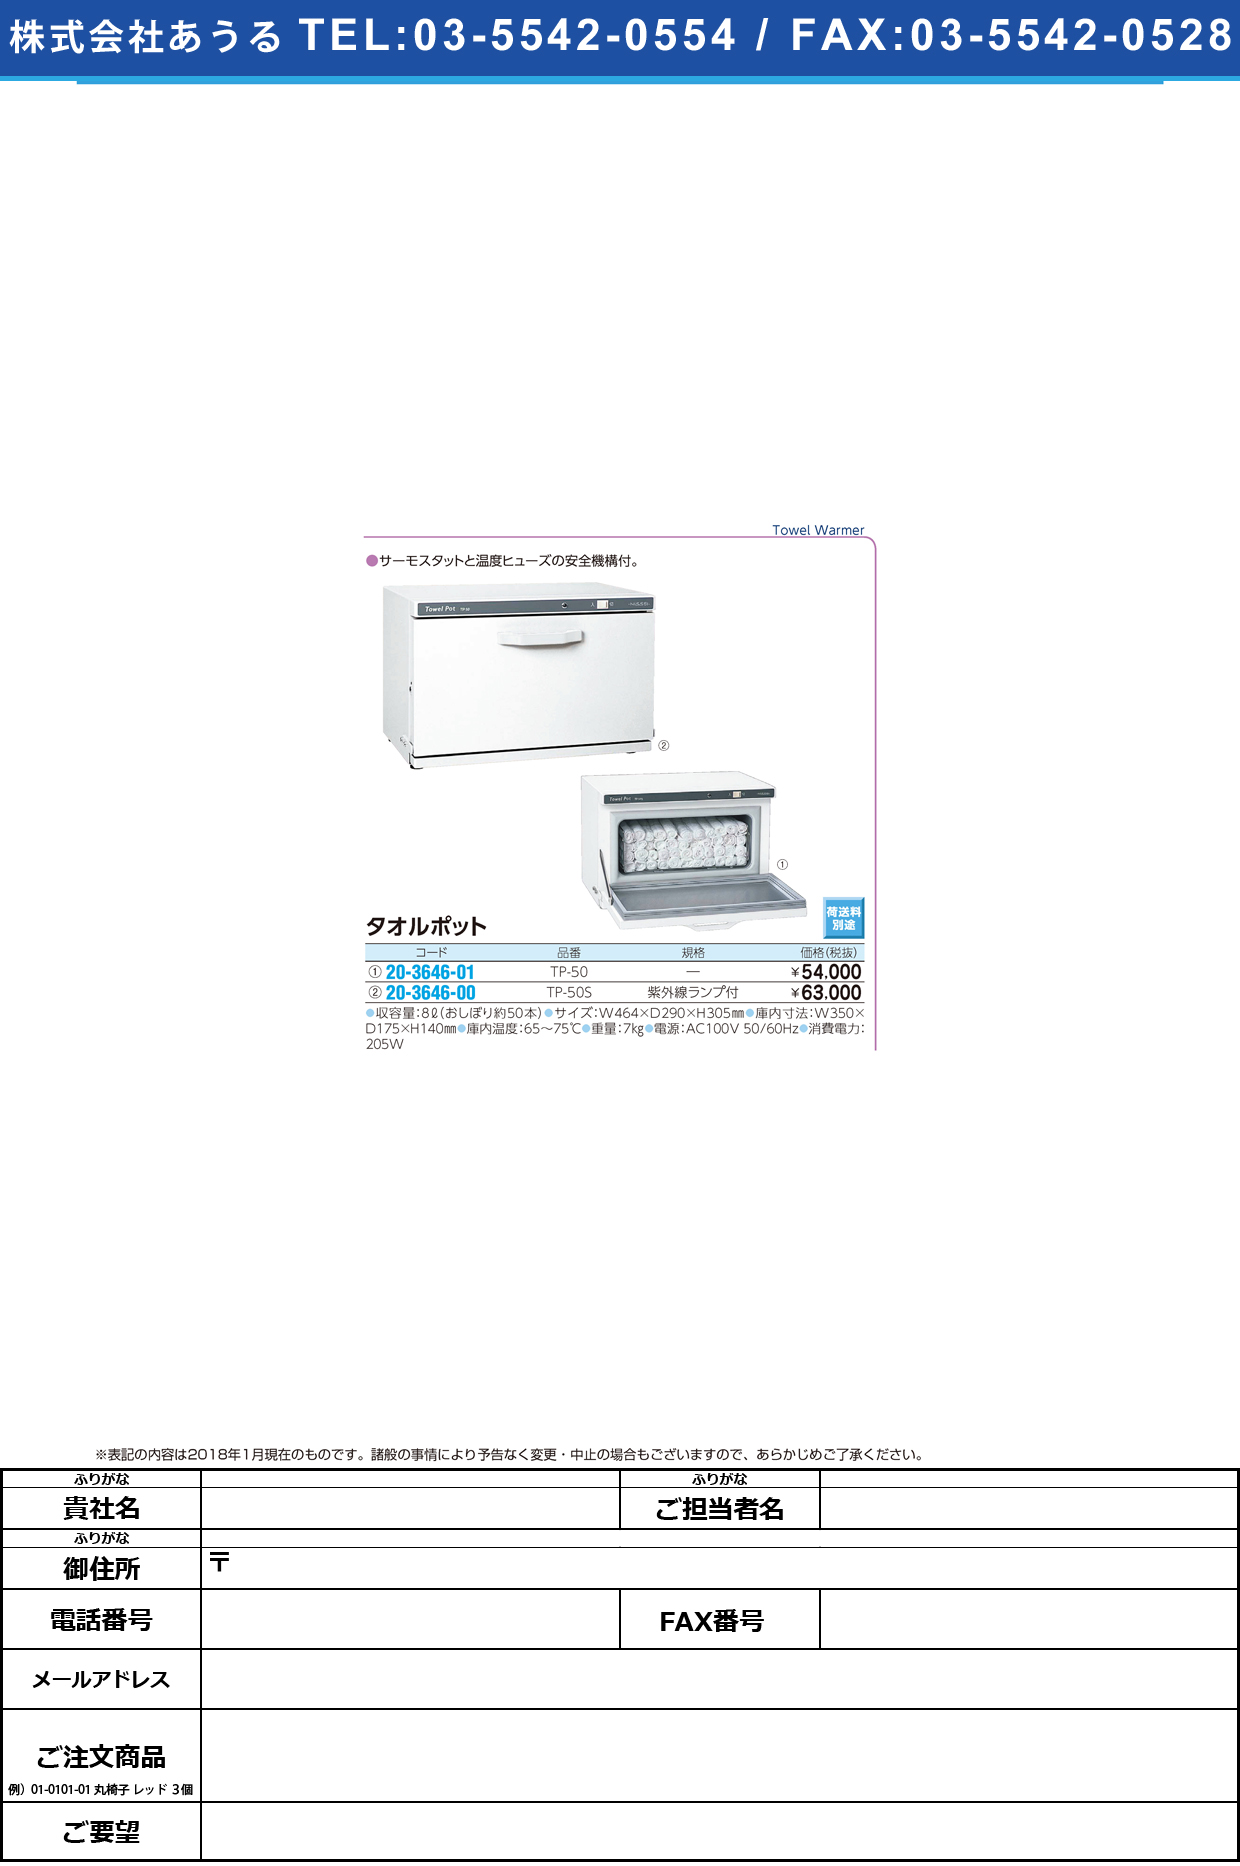 (20-3646-00)タオルポット（紫外線ランプ付） TP-50S ﾀｵﾙﾎﾟｯﾄ(ｼｶﾞｲｾﾝﾗﾝﾌﾟﾂｷ【1台単位】【2018年カタログ商品】